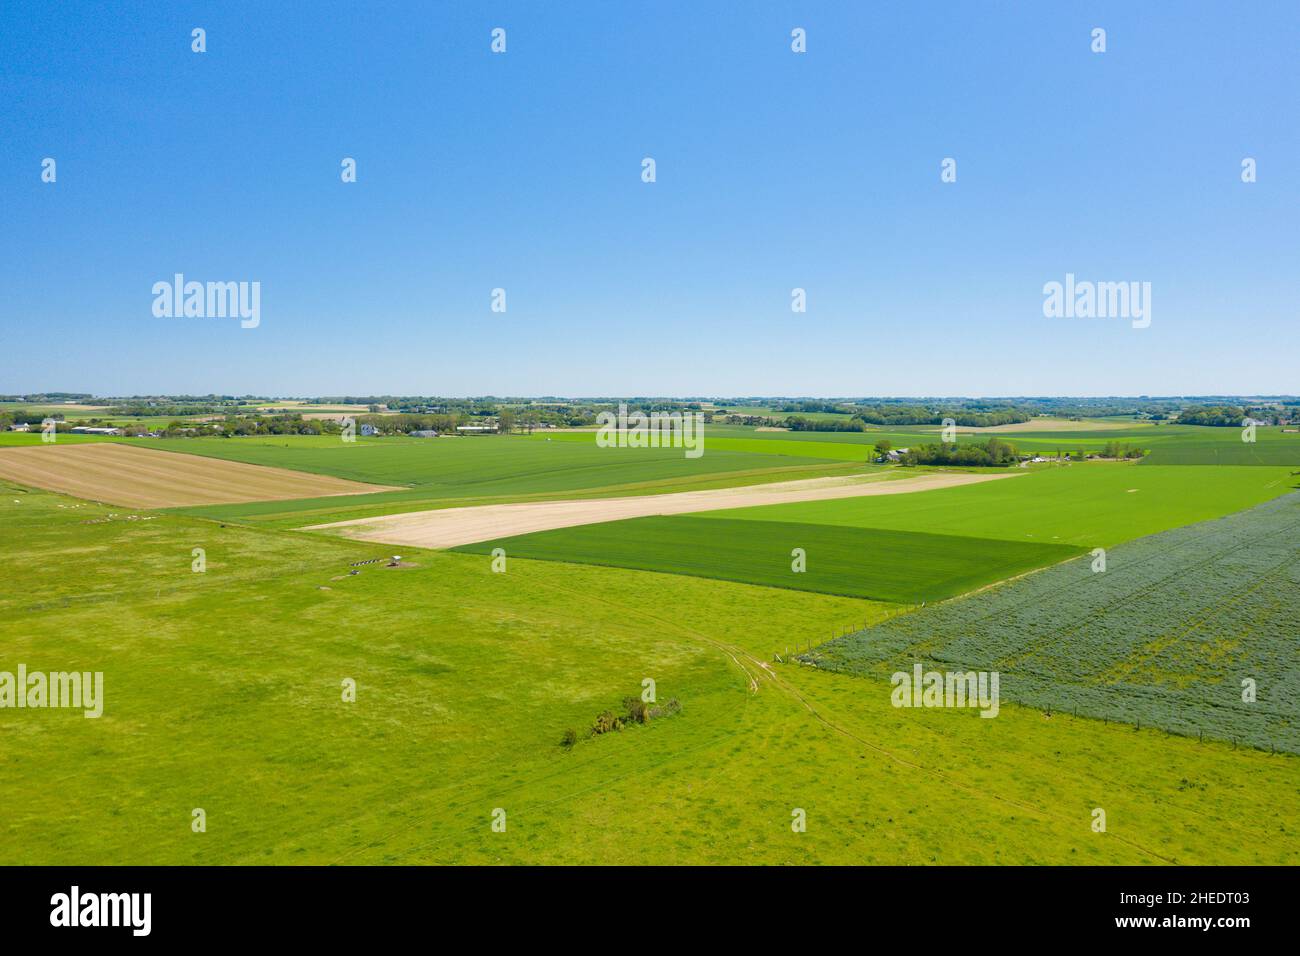 Cette photo de paysage a été prise en Europe, en France, en Normandie, près de Deauville, en été.Nous voyons la campagne normande et ses champs de lin et de barle Banque D'Images